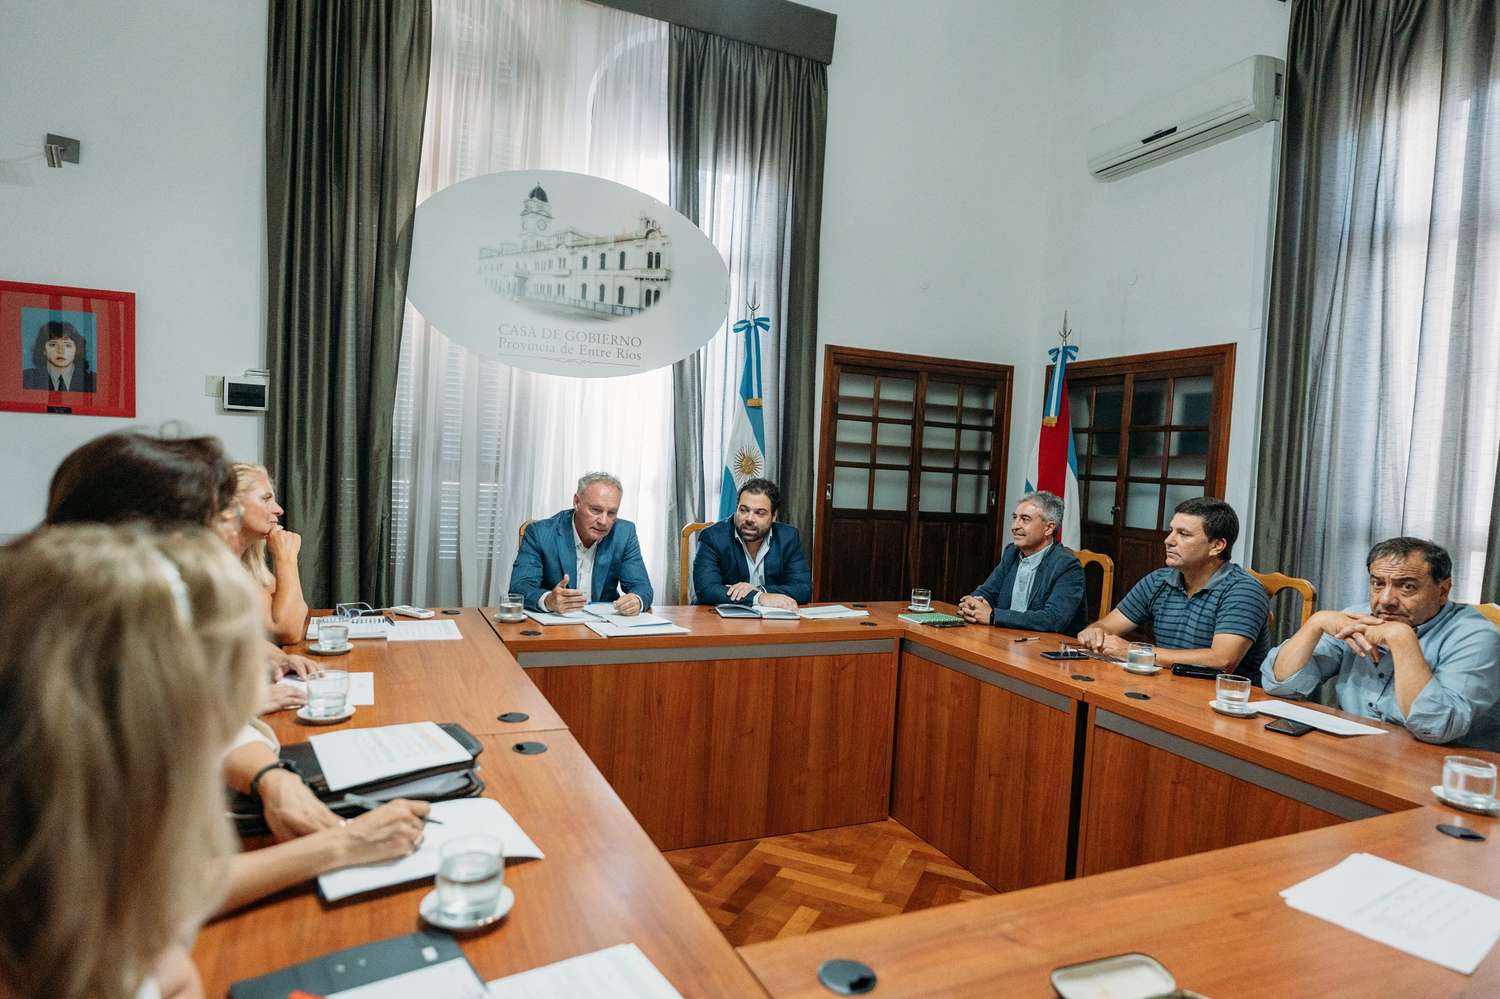 Ministros de Frigerio se reunieron con senadores del PJ para analizar la situación de las obras en la provincia